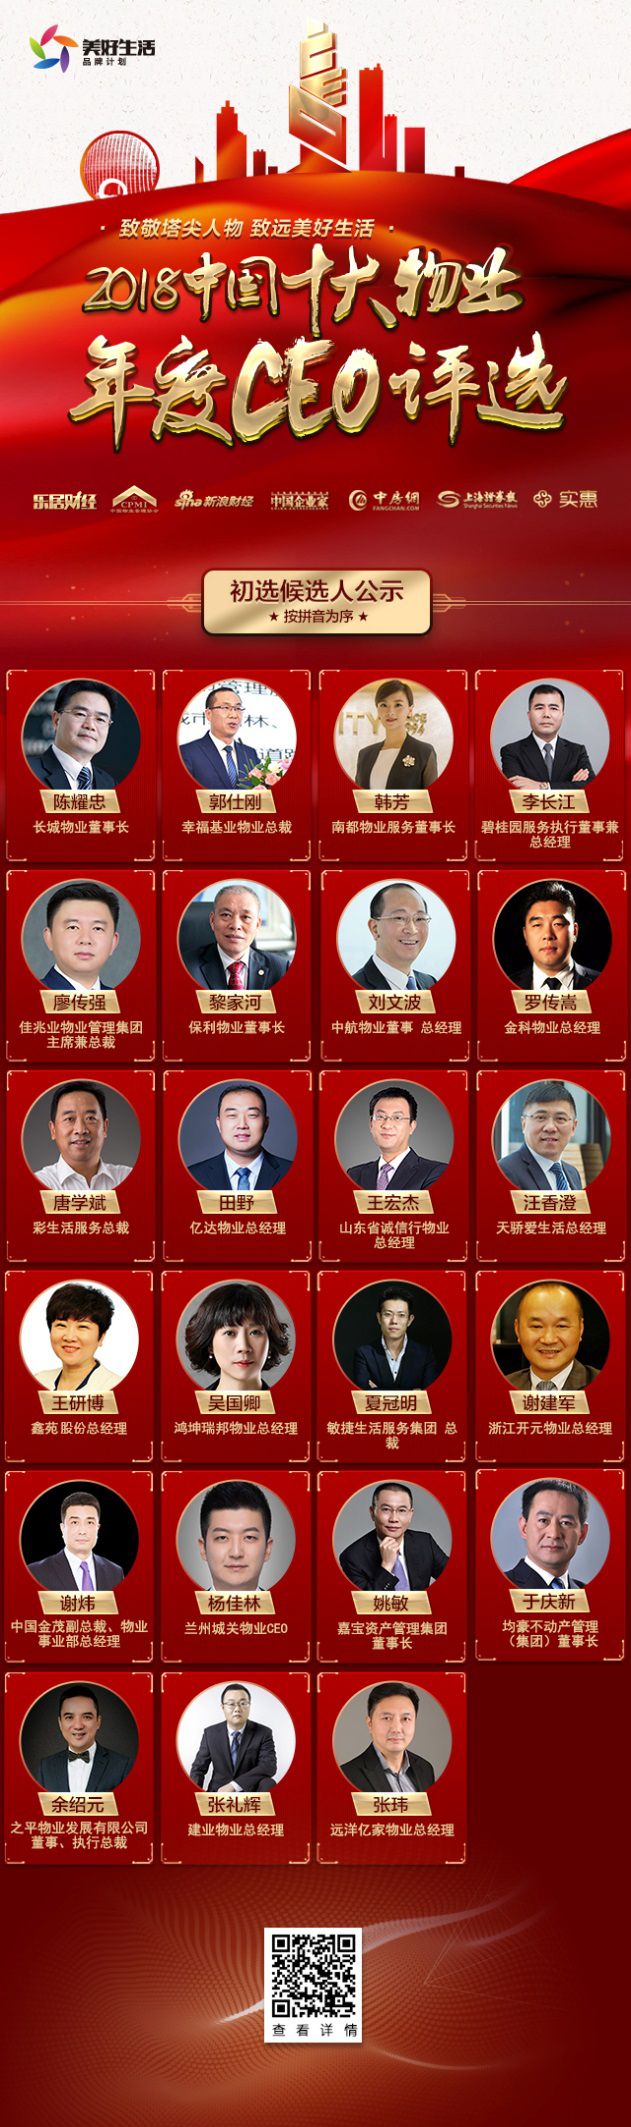 中国十大物业年度CEO候选人